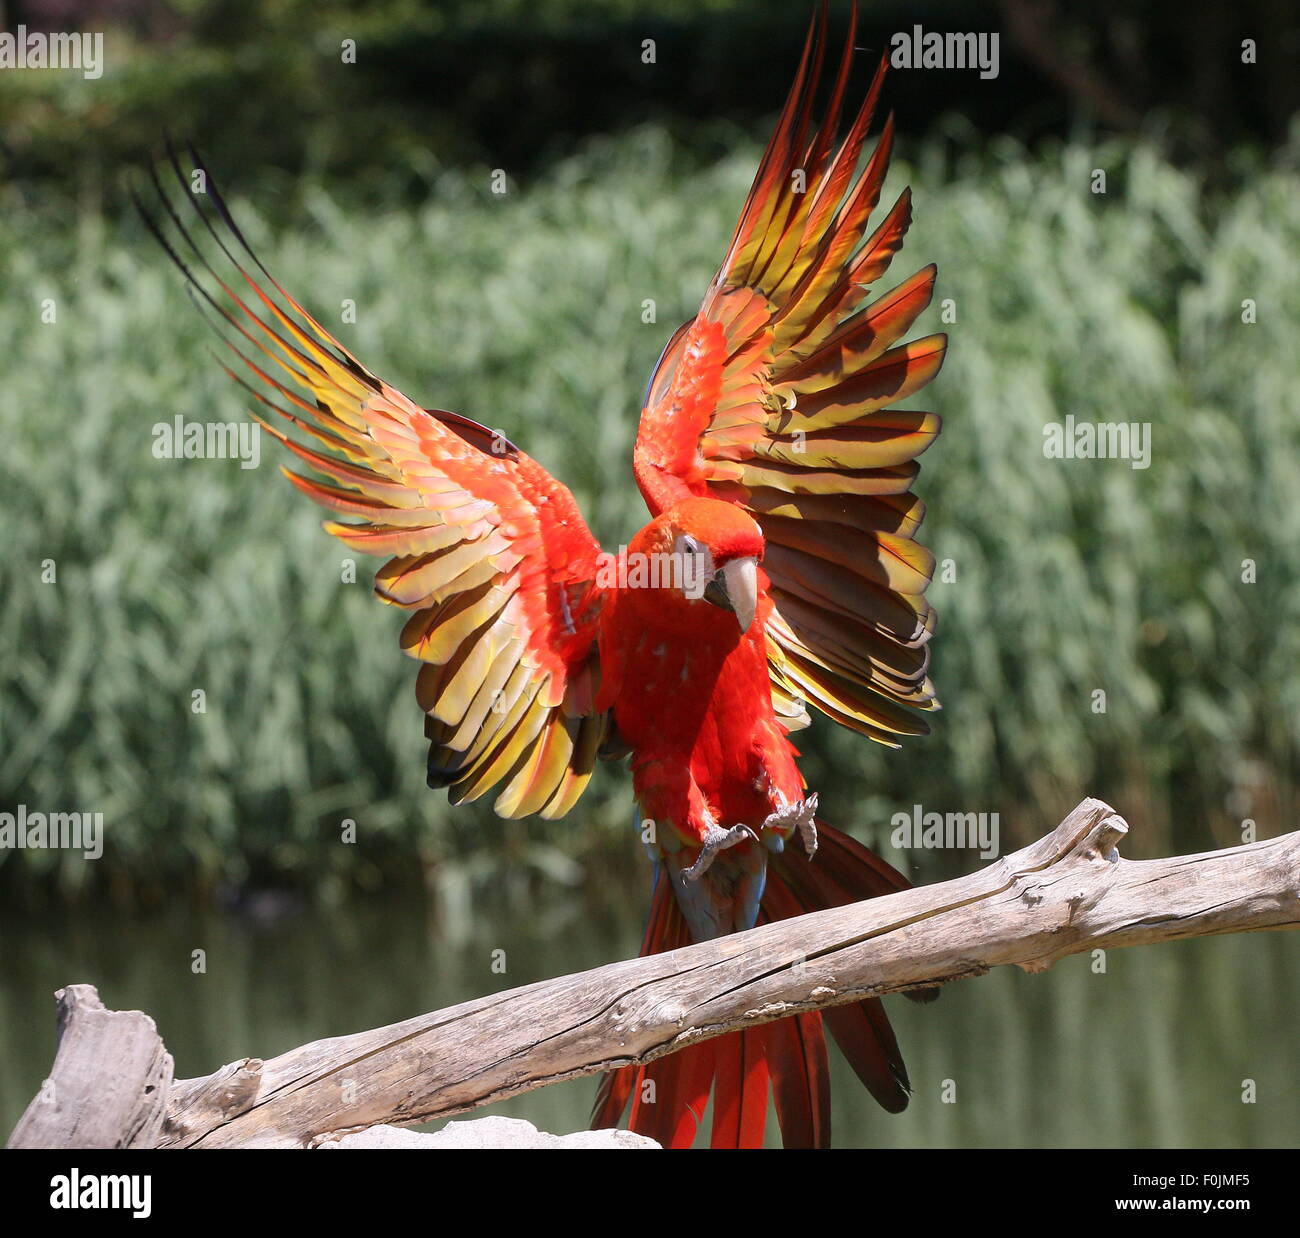 South American ara rouge (Ara macao) en vol, atterrissage et entrant sur une branche, ailes déployées Banque D'Images